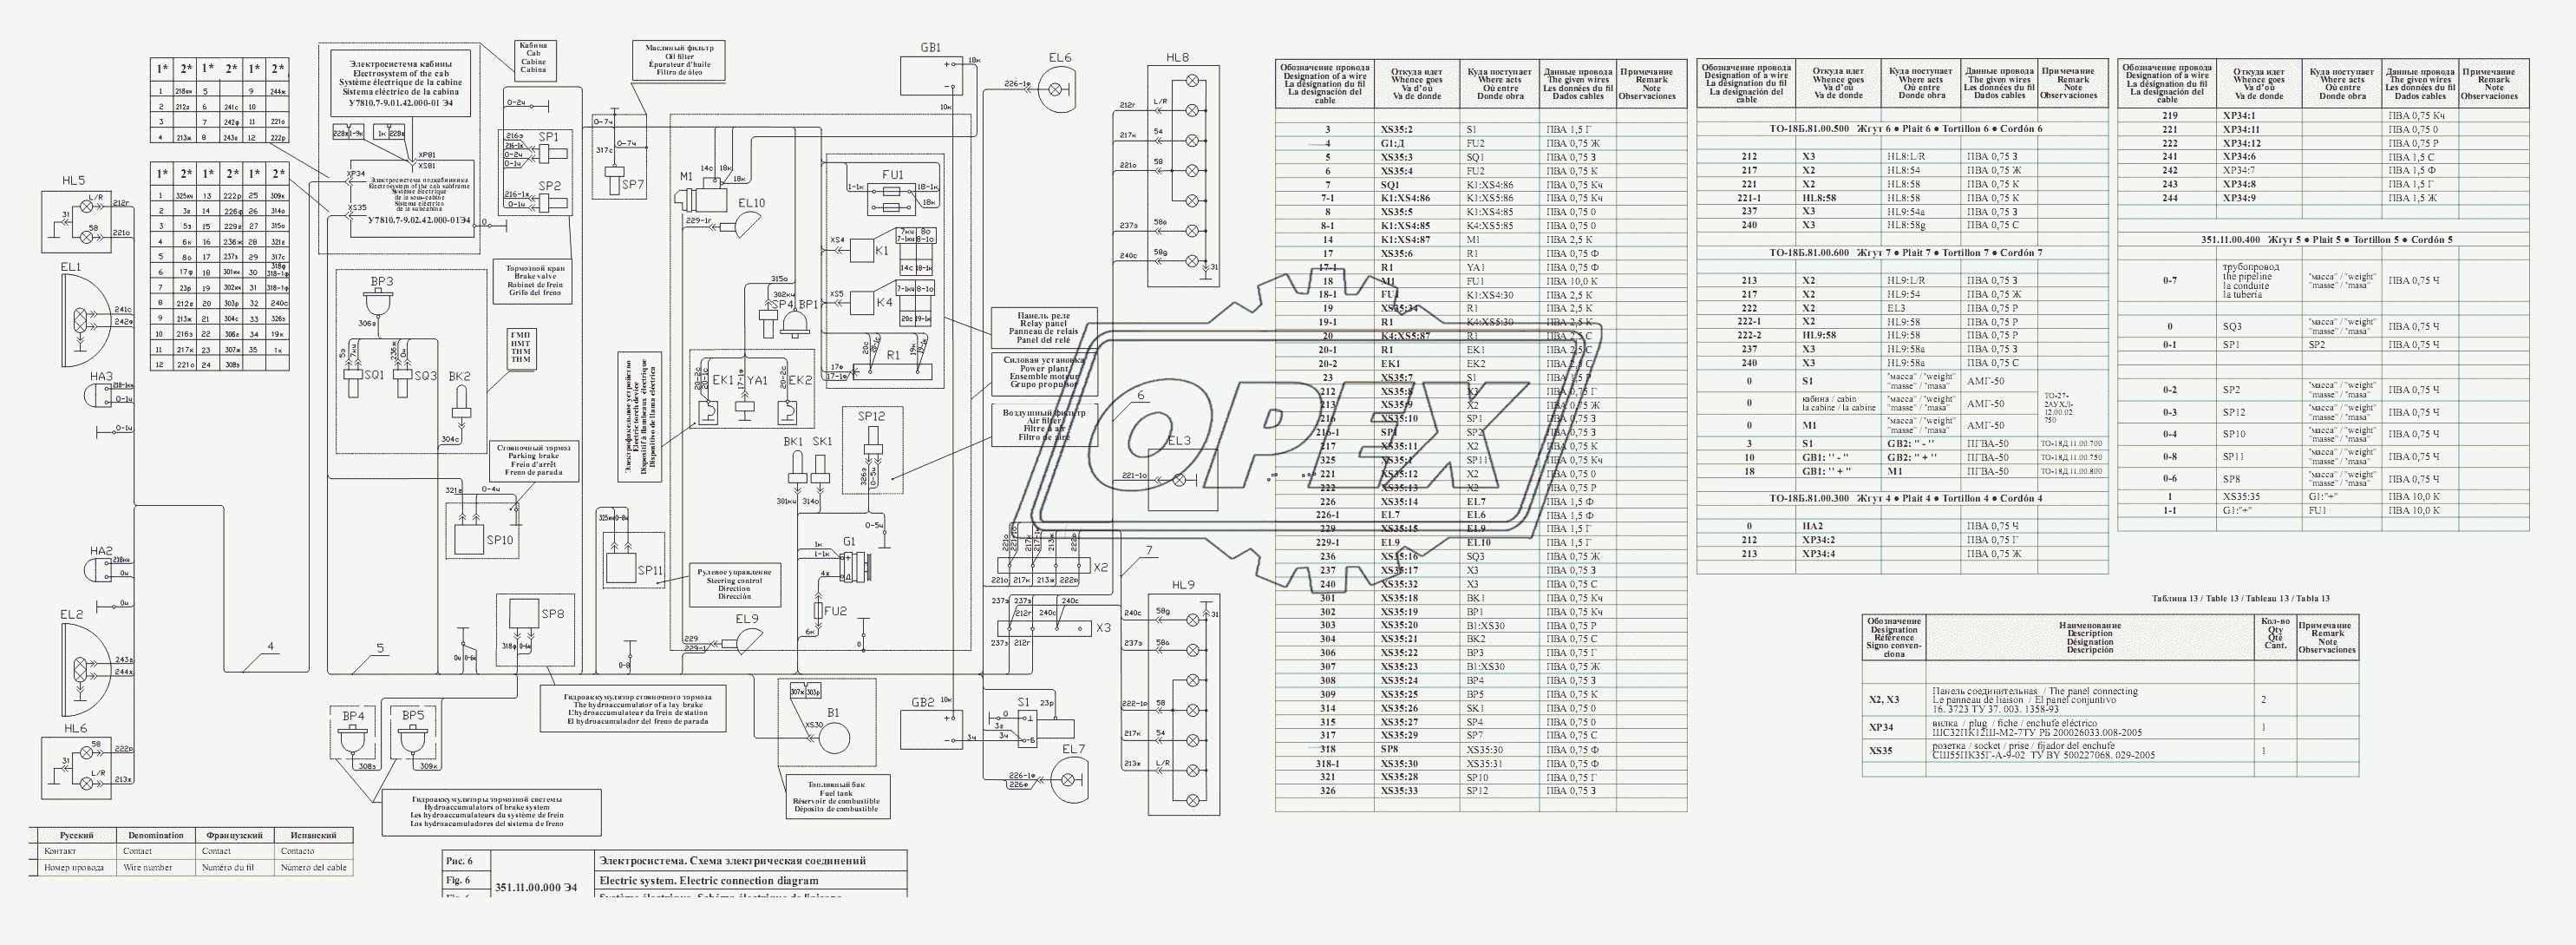 Схема электрическая соединений 351.11.00.000 Э4.Таблица соединений